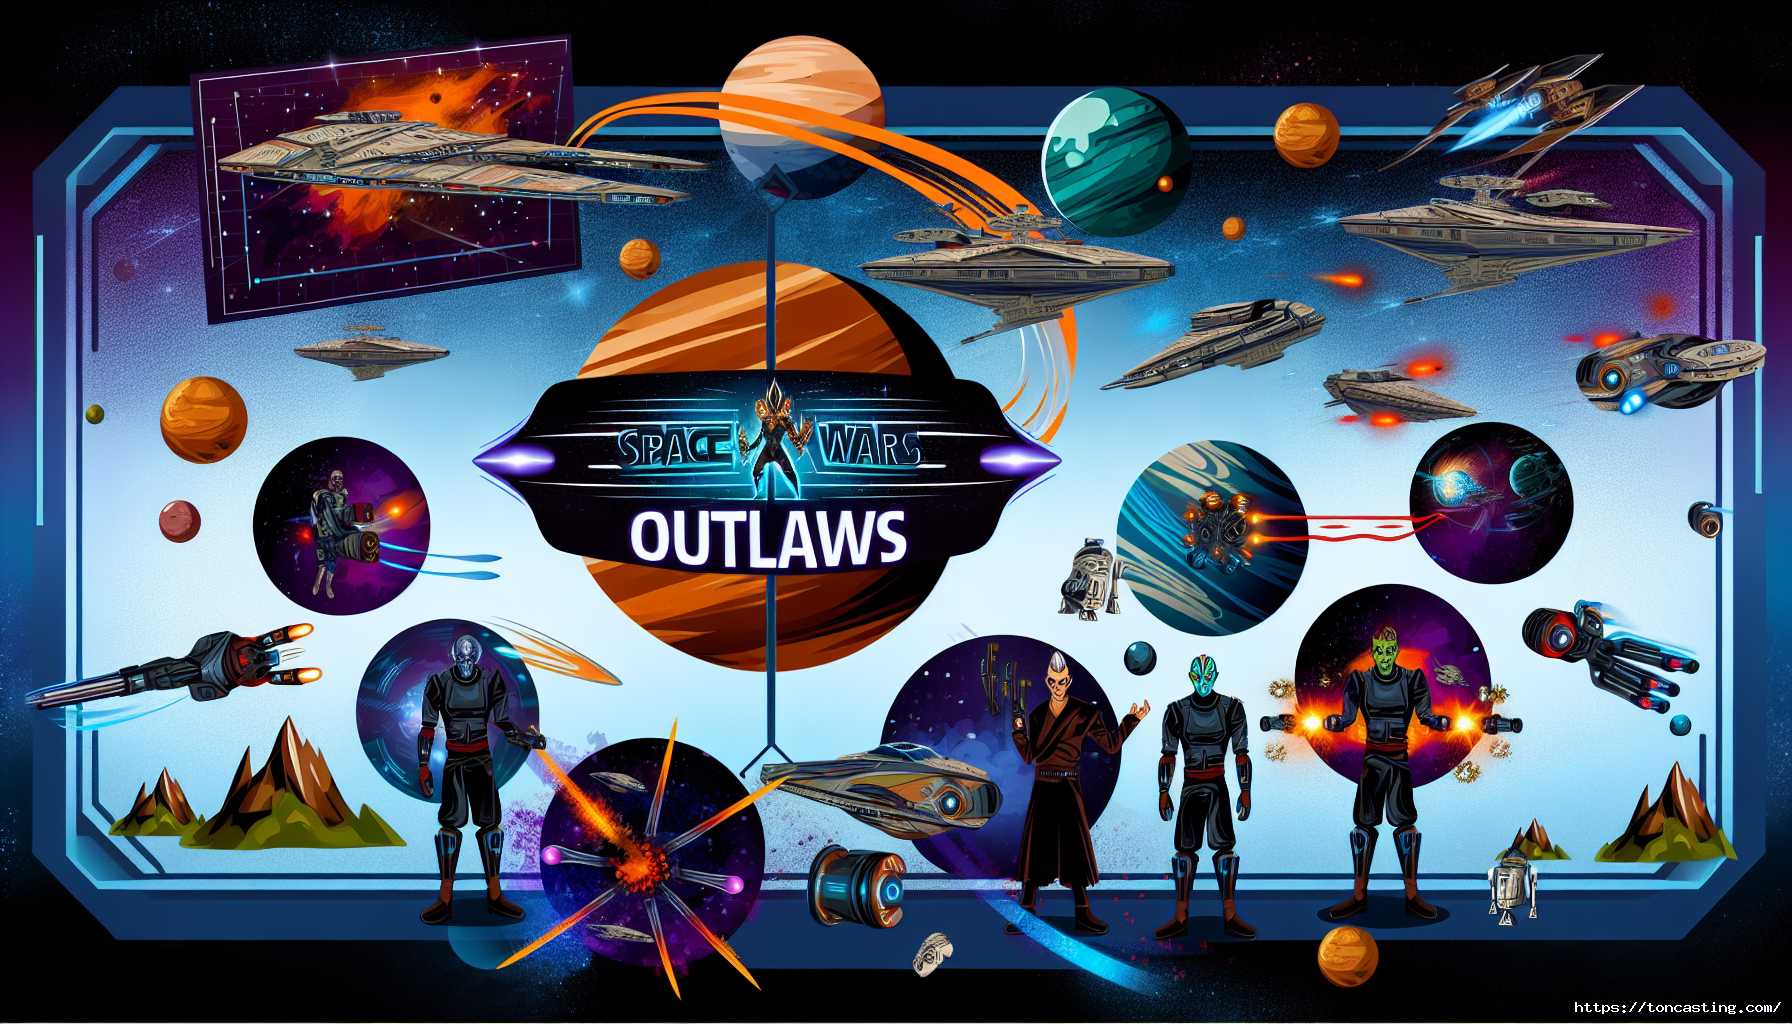 Aperçu de Star Wars Outlaws : Ubisoft frappe fort avec son nouveau jeu d'action-aventure.